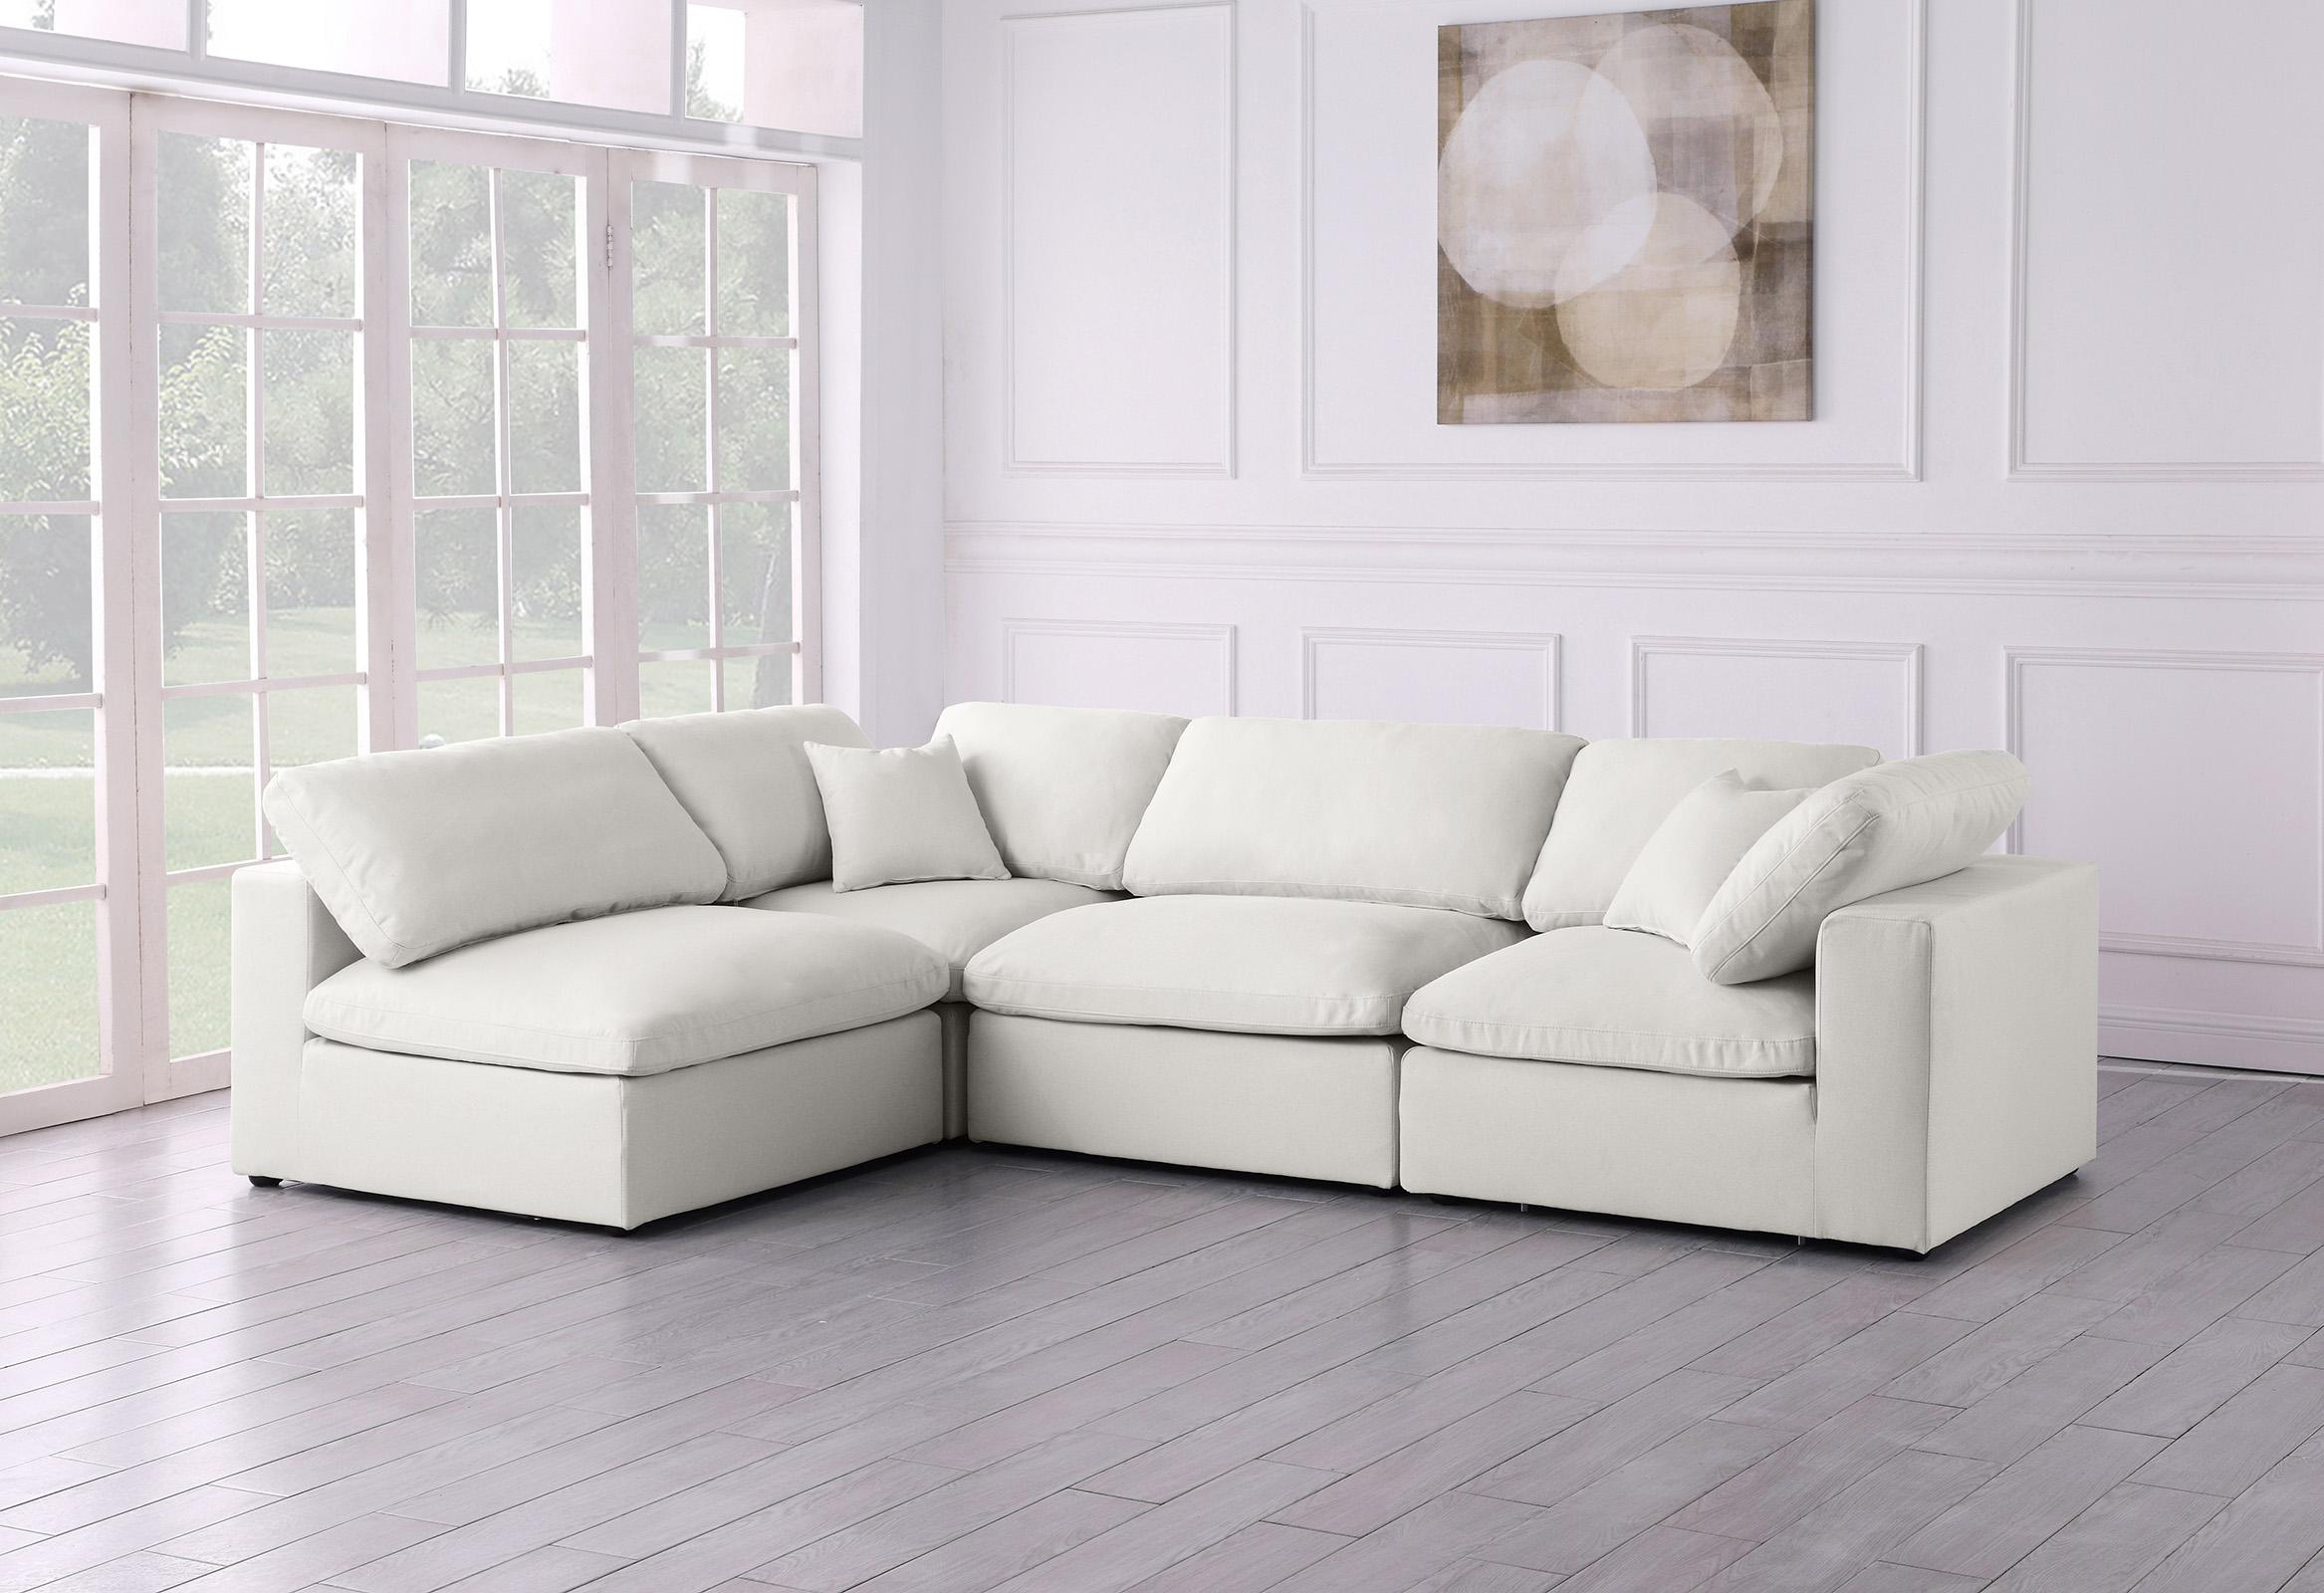 

        
Meridian Furniture 602Cream-Sec4B Sectional Sofa Cream Fabric 094308257808
